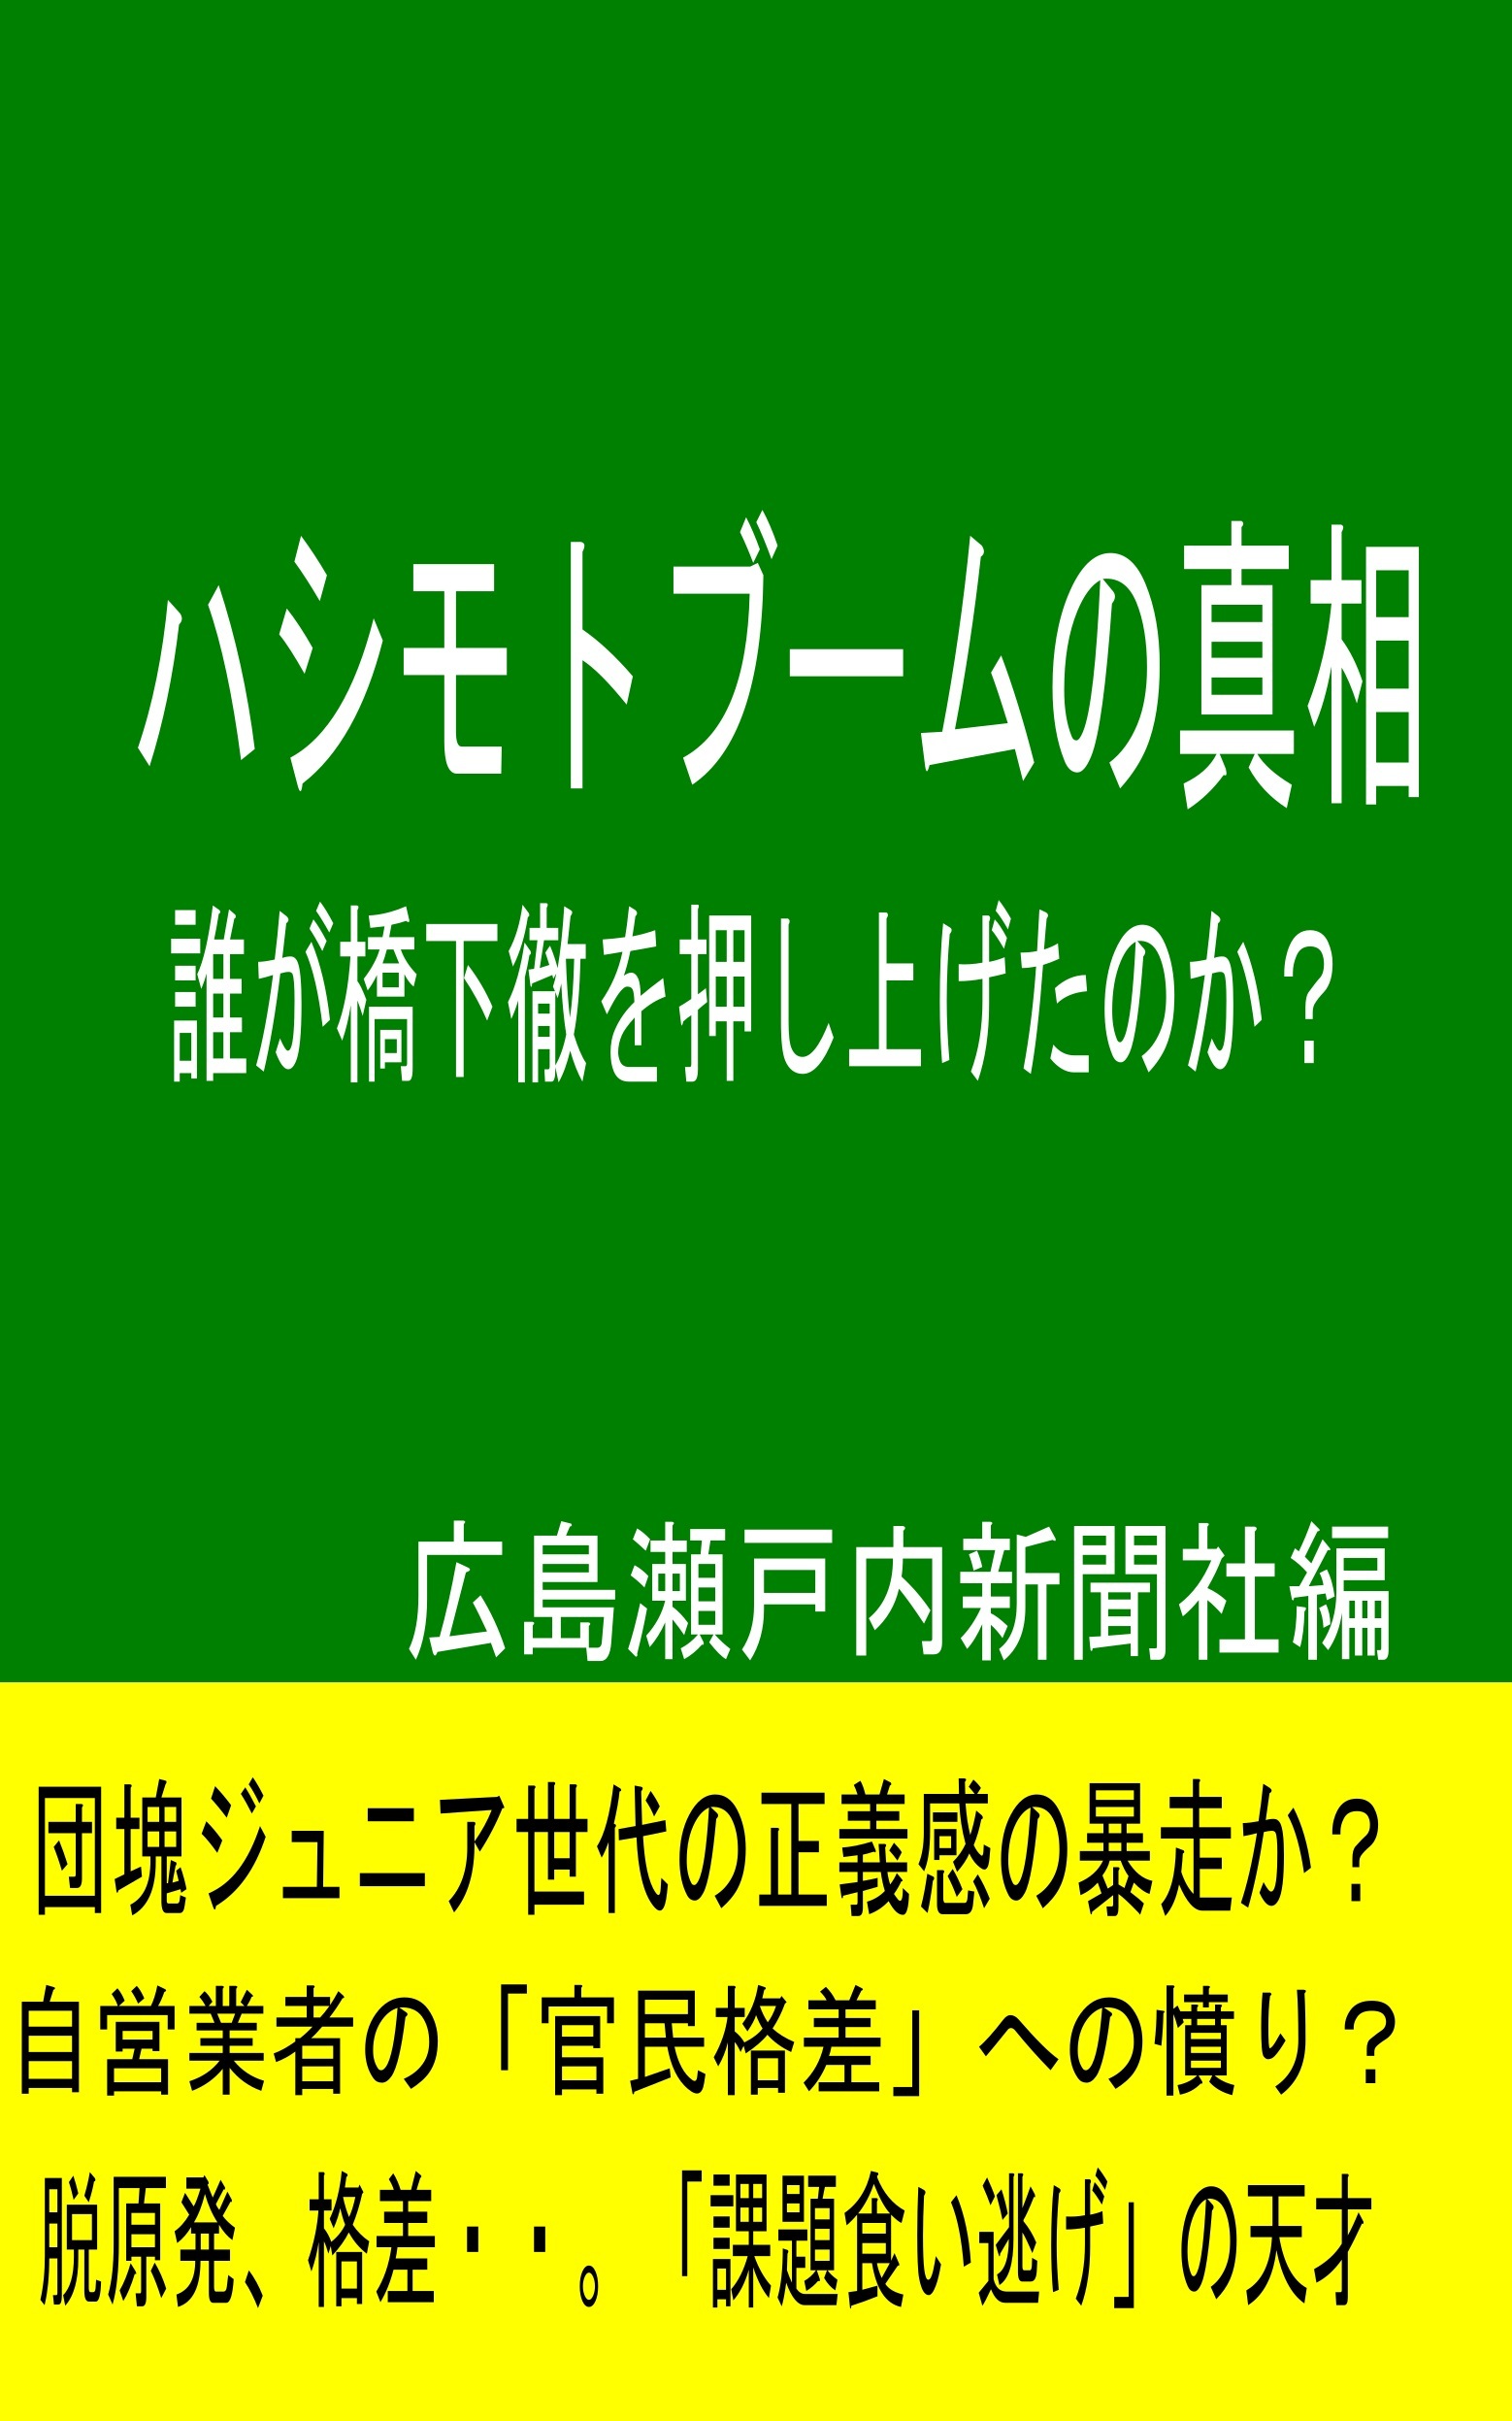 橋下徹さんを11月22日、「大阪帝国皇帝」に即位させたいですか？それともまっとうな民主主義を取り戻したいですか？_e0094315_06452038.jpg